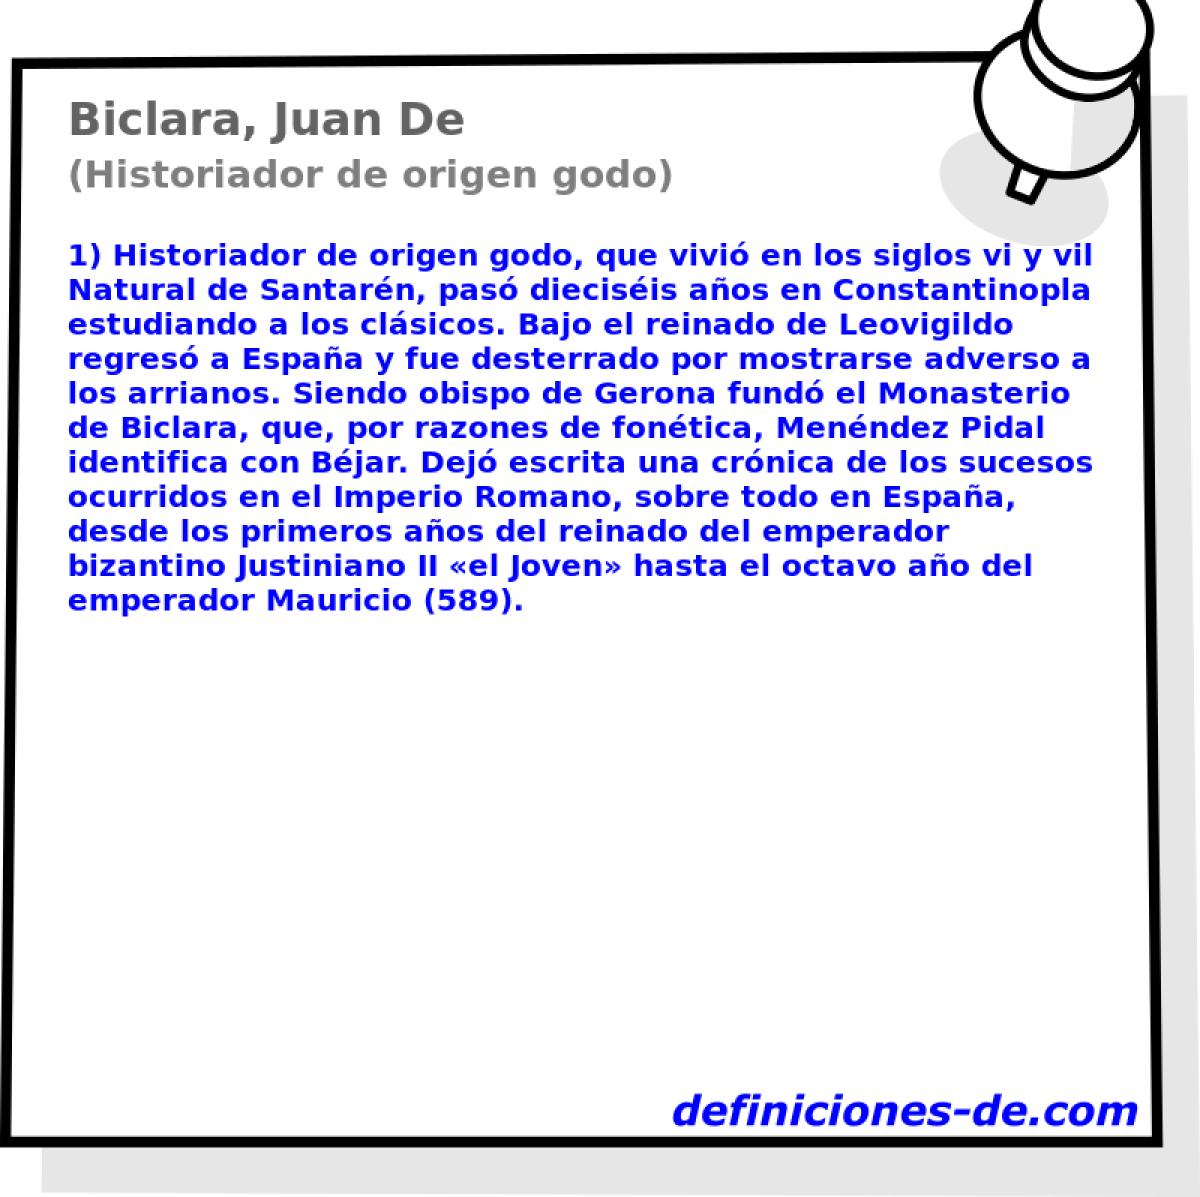 Biclara, Juan De (Historiador de origen godo)